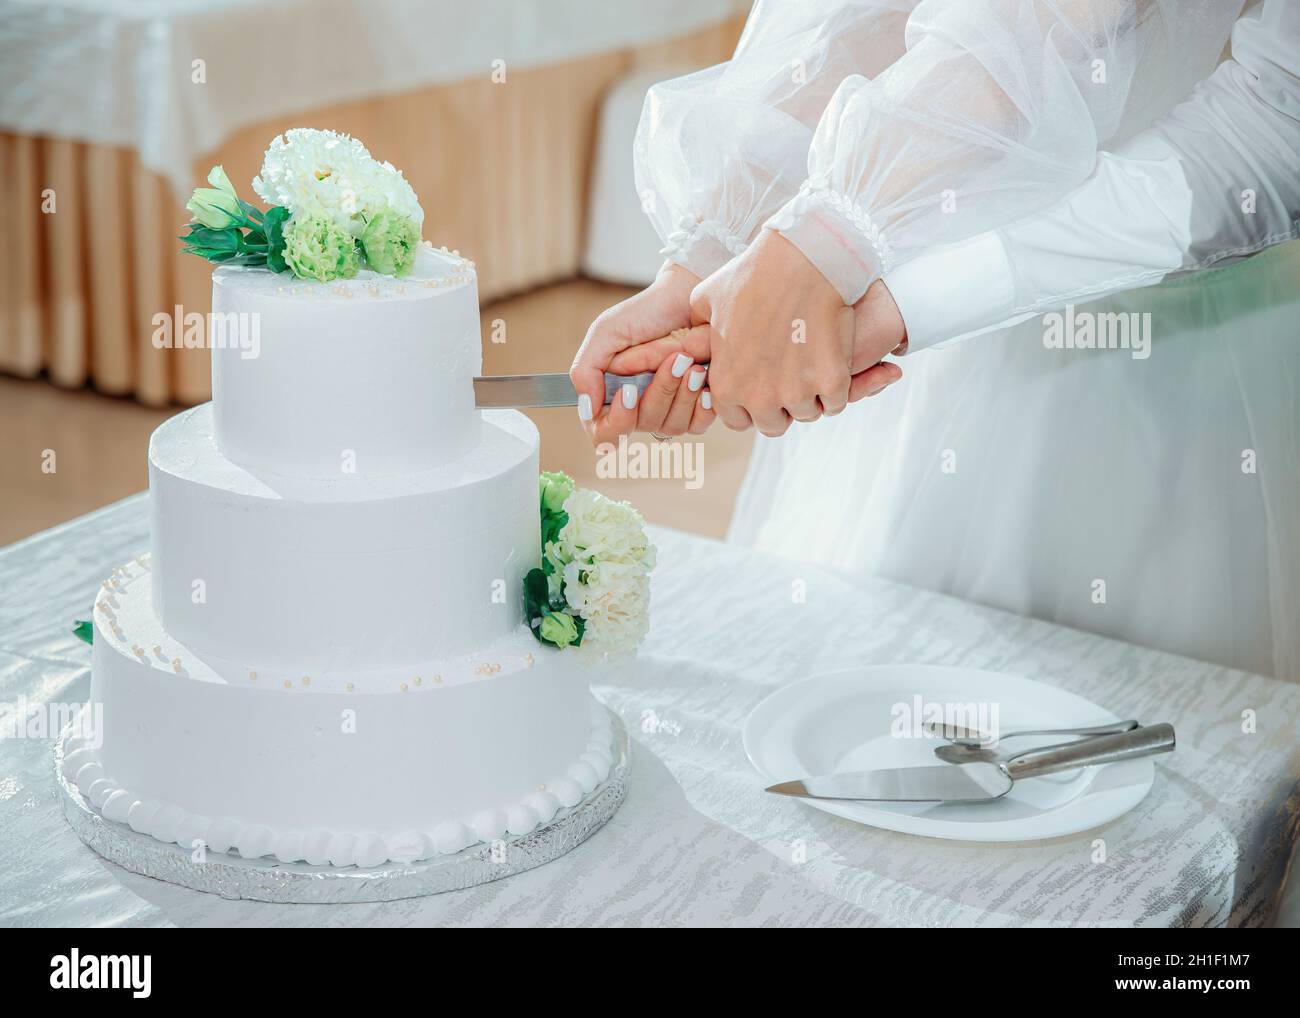 Frisch verheiratetes Paar schneidet den Hochzeitstorte. Eine Braut und ein Bräutigam Hände halten ein Messer, Nahaufnahme. Wunderschöne weiße dreistufige Torte mit Blumen verziert Stockfoto